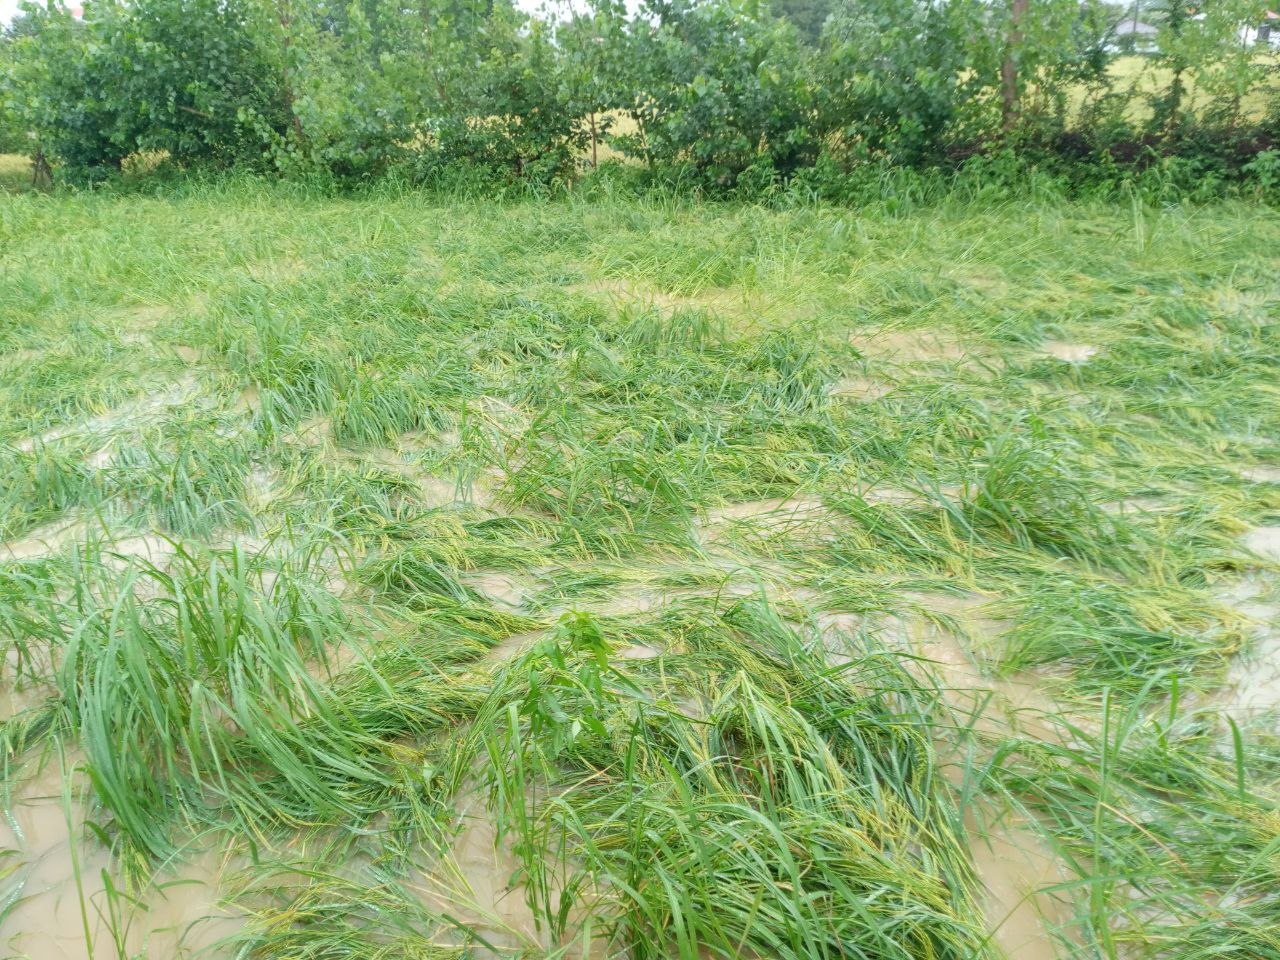 مزارع برنج گیلان زیر آب رفتند + فیلم